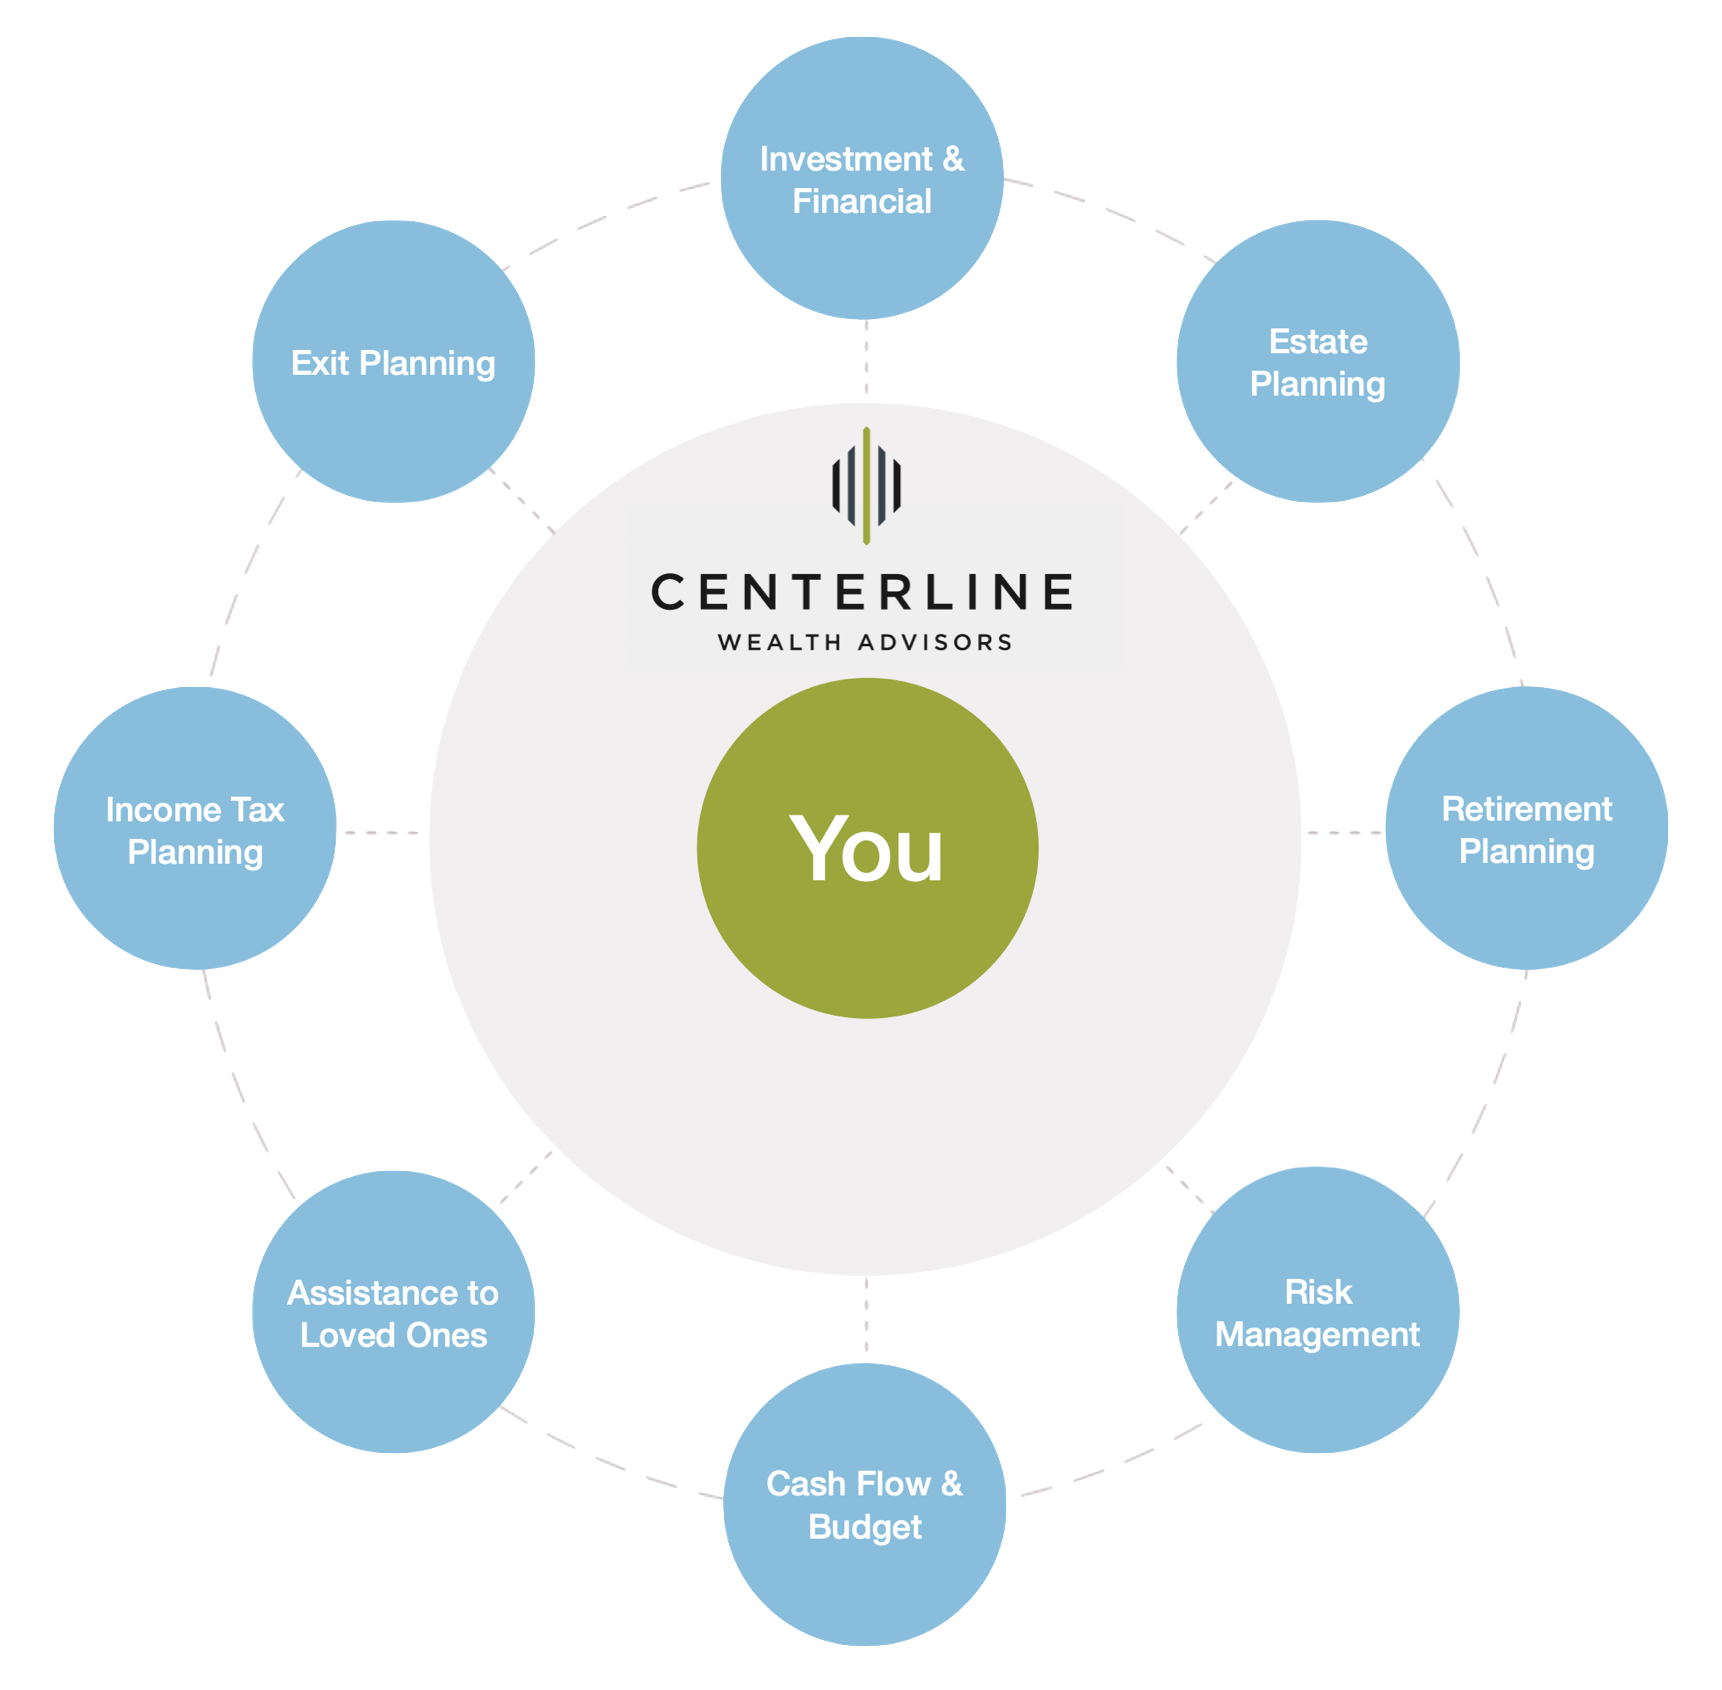 Centerline's Core Services